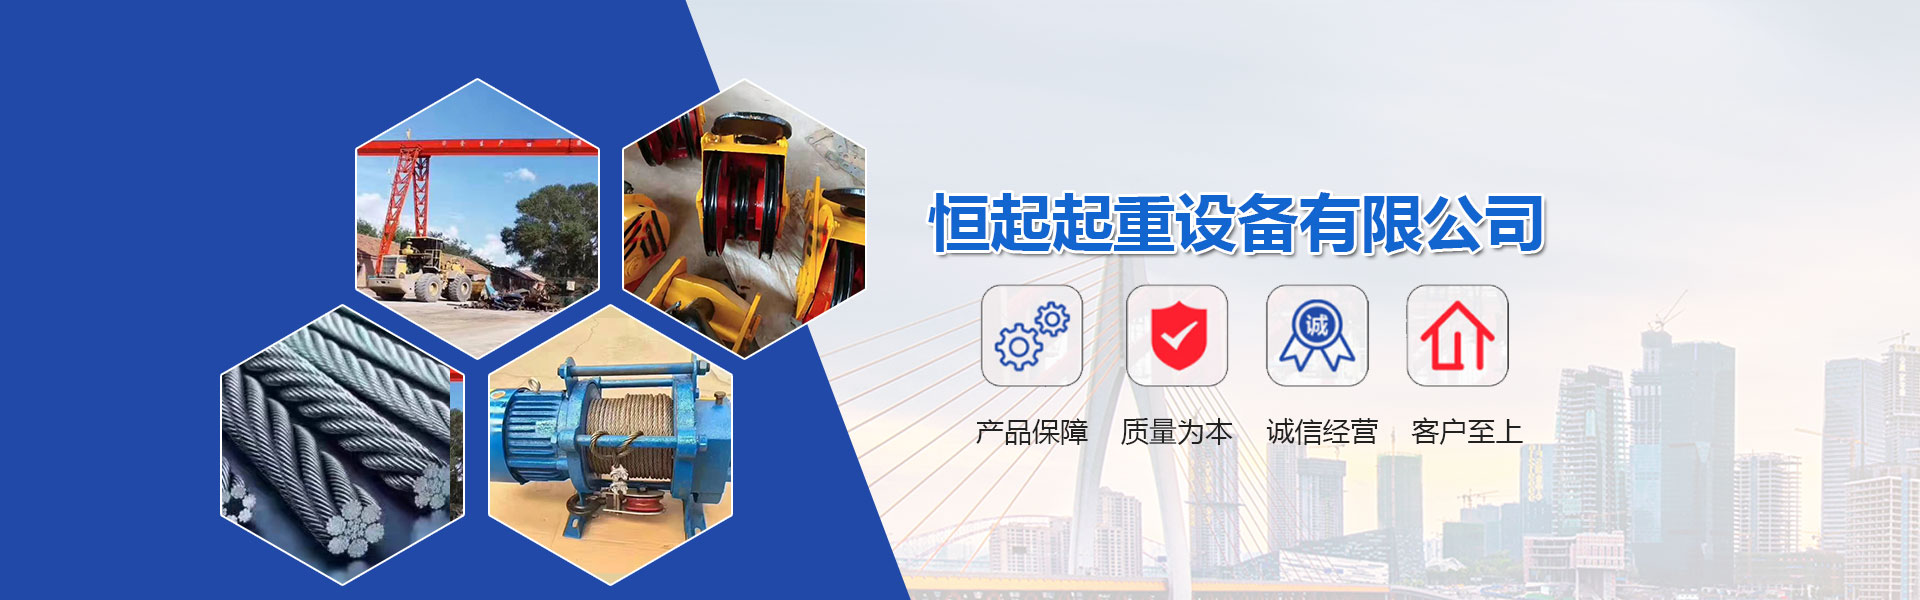 关于当前产品92彩票官网站·(中国)官方网站的成功案例等相关图片